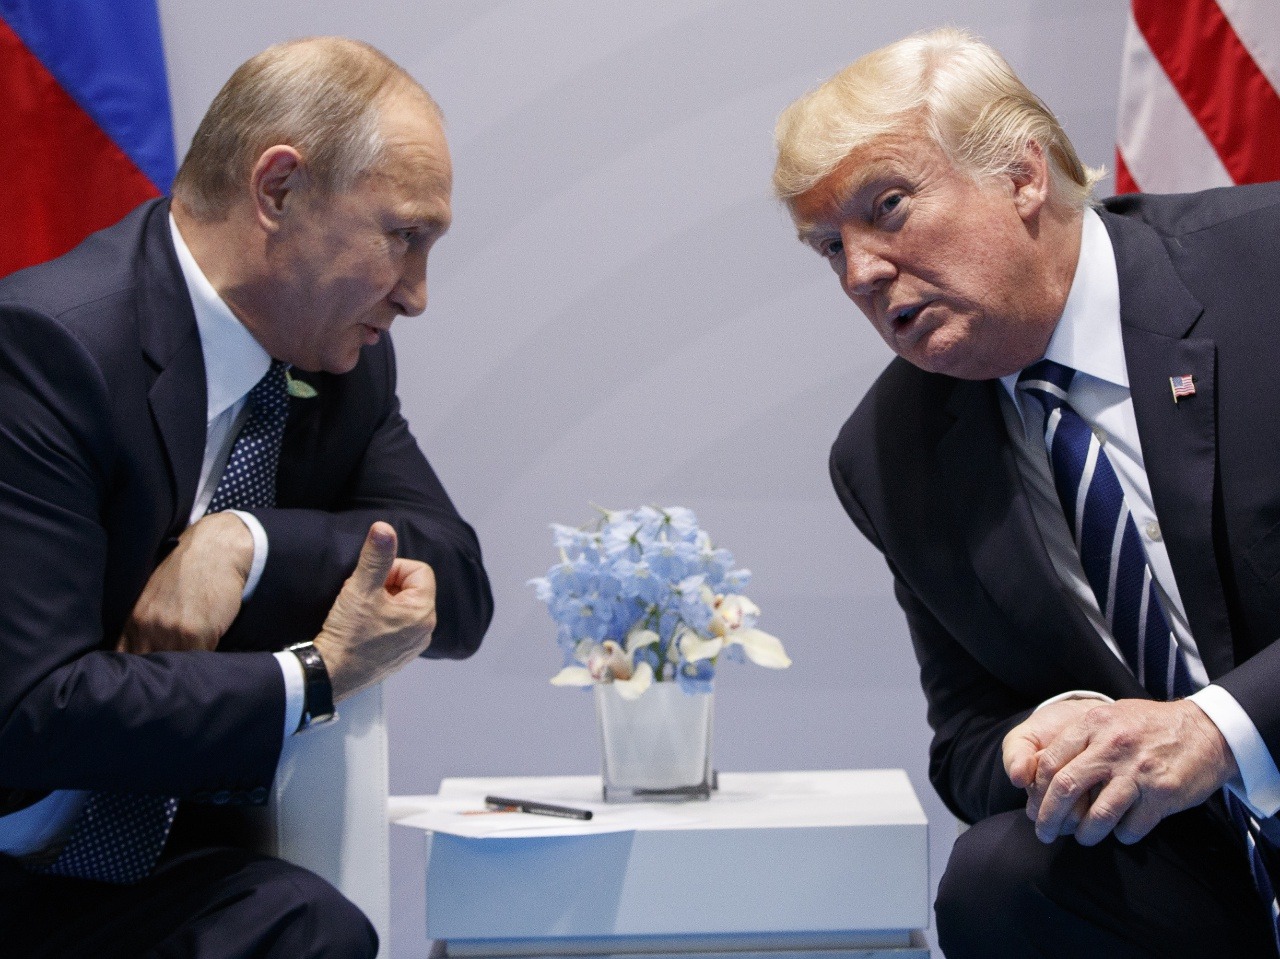 Stretnutie hláv Ruska a Ameriky na summite G20 v Hamburgu